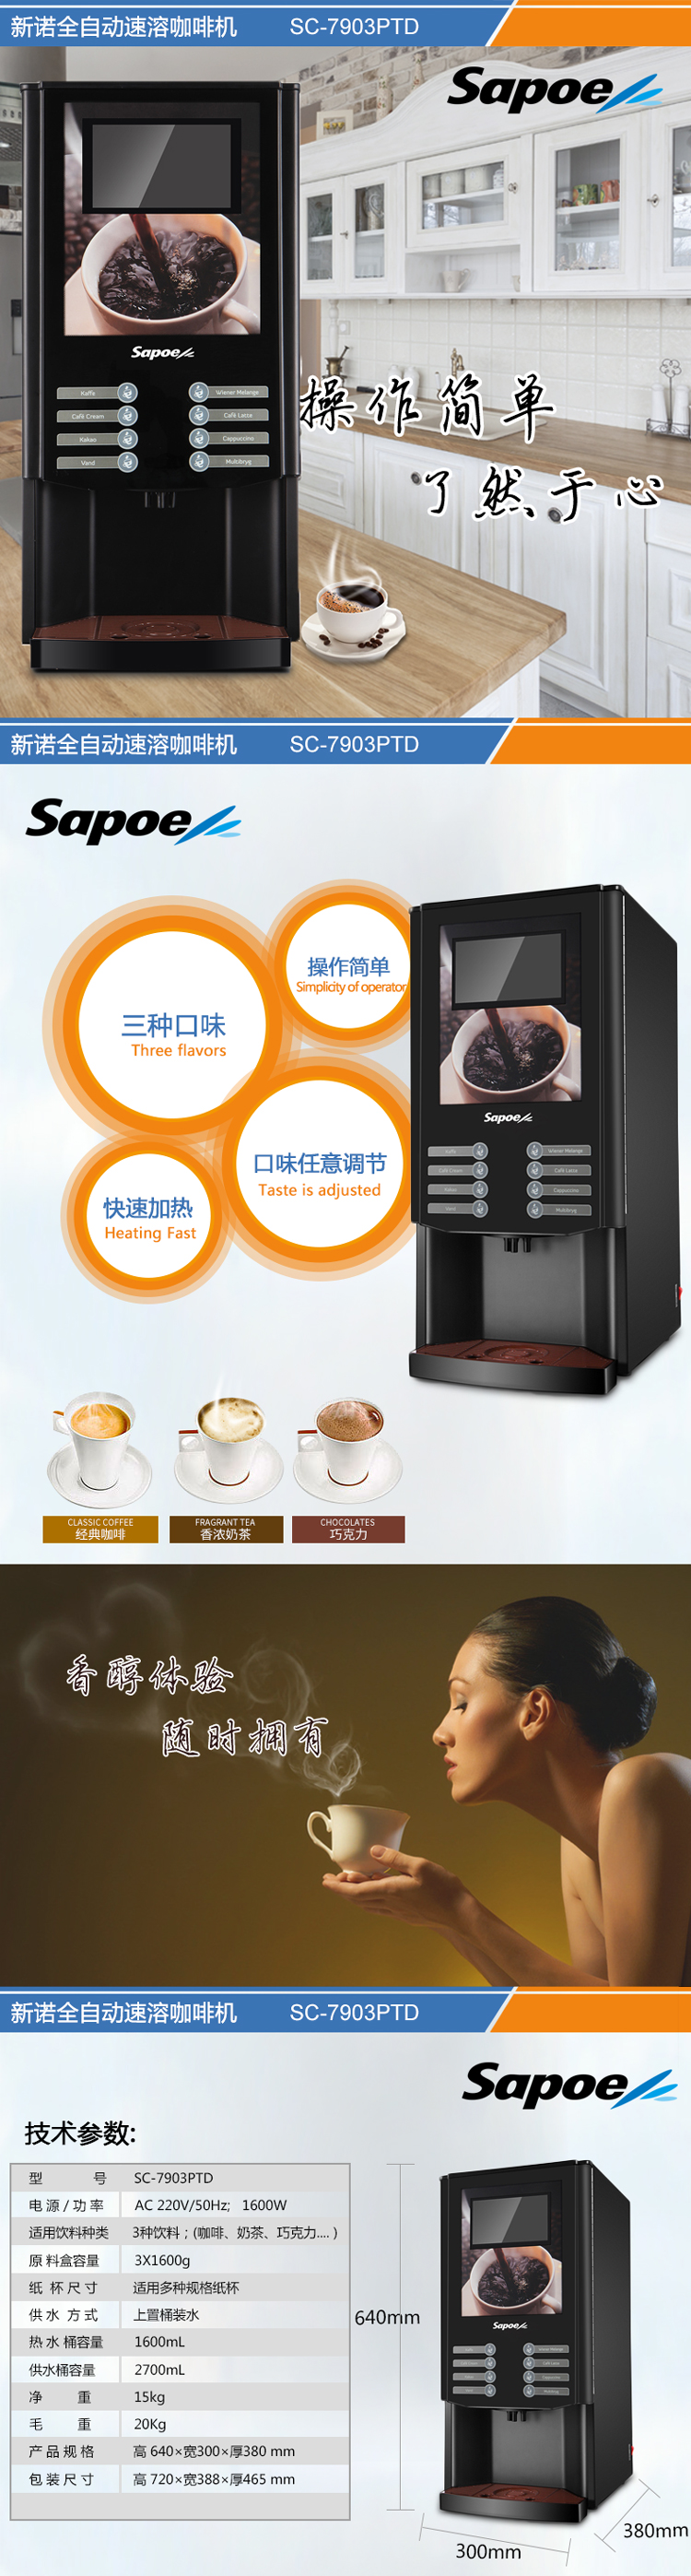 怀旧风咖啡牛奶巧克力茶饮自动冲调机SC-7903PTD